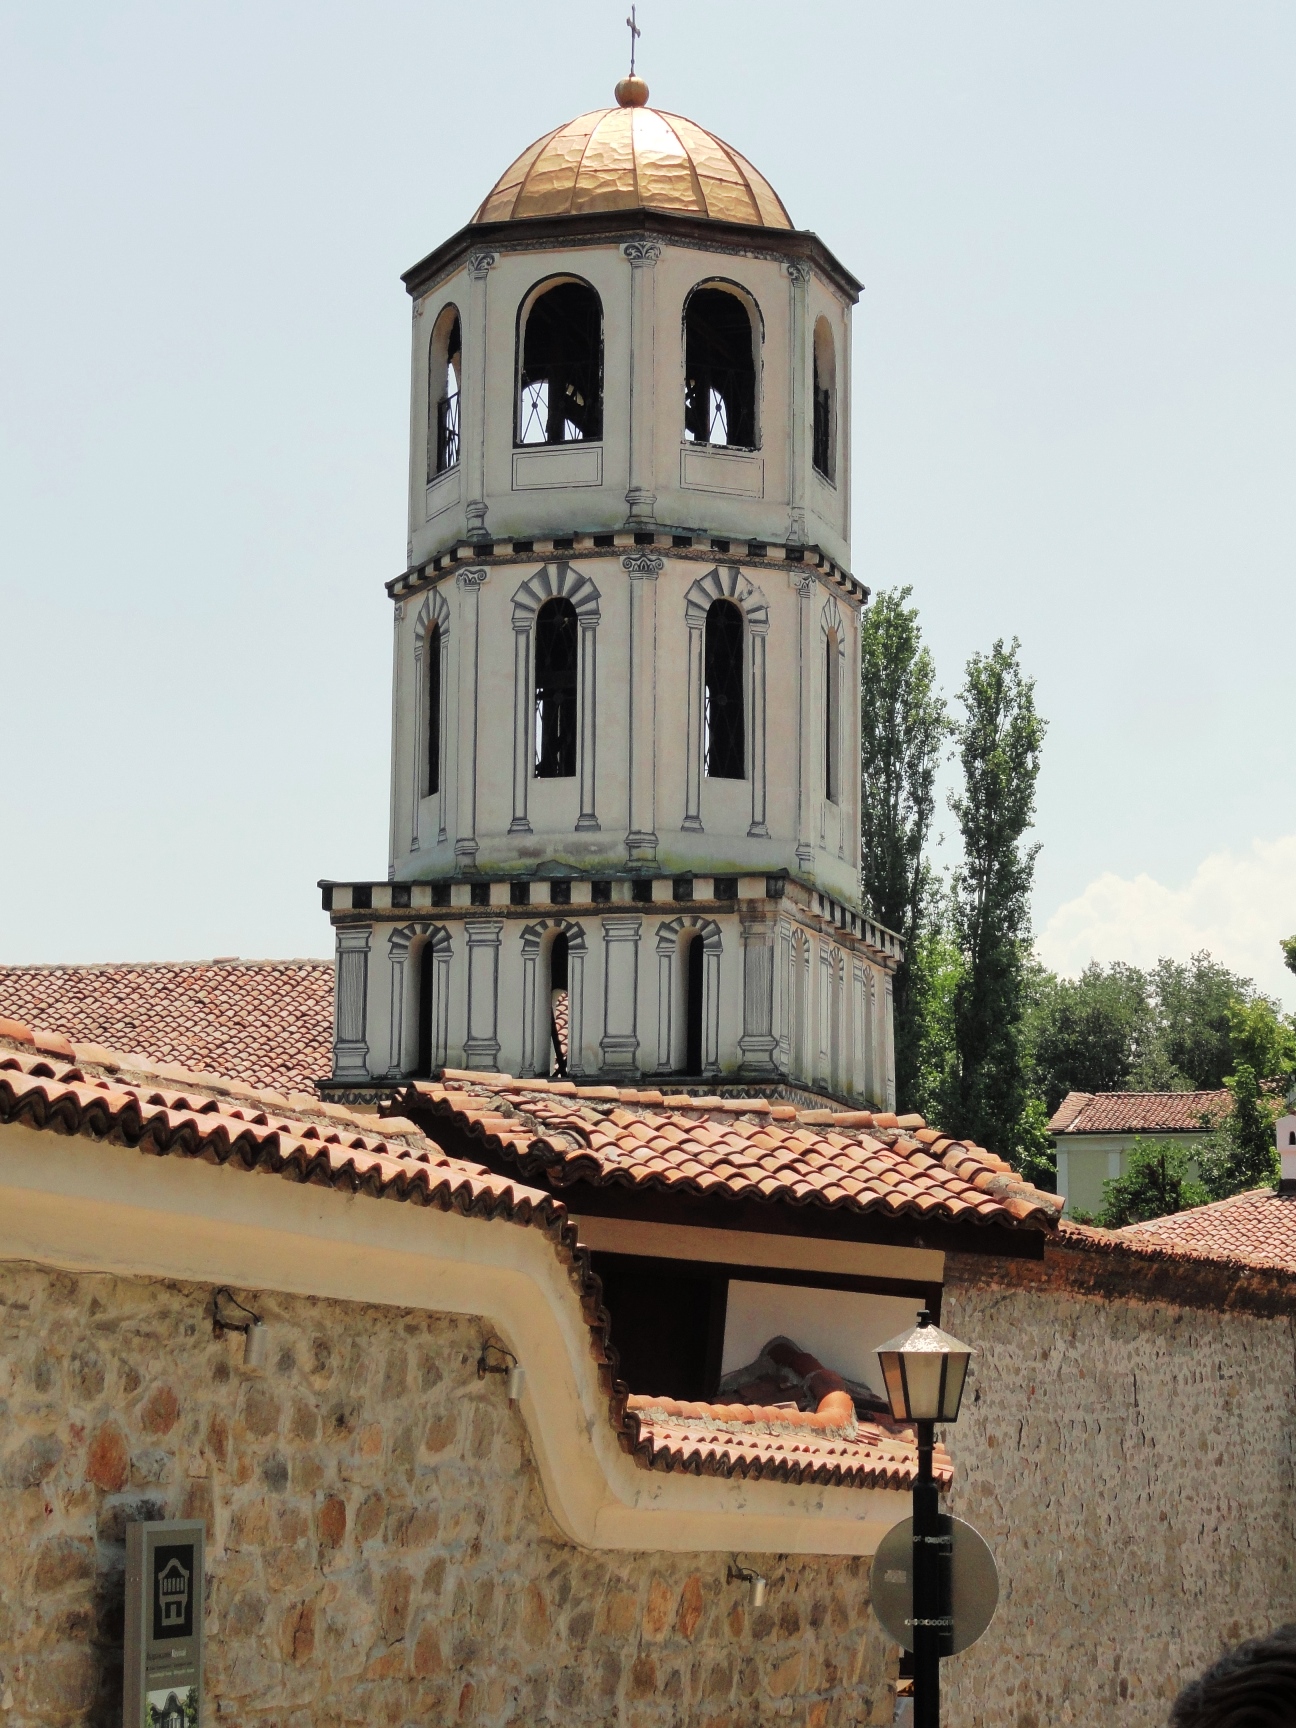 plovdiv bell tower